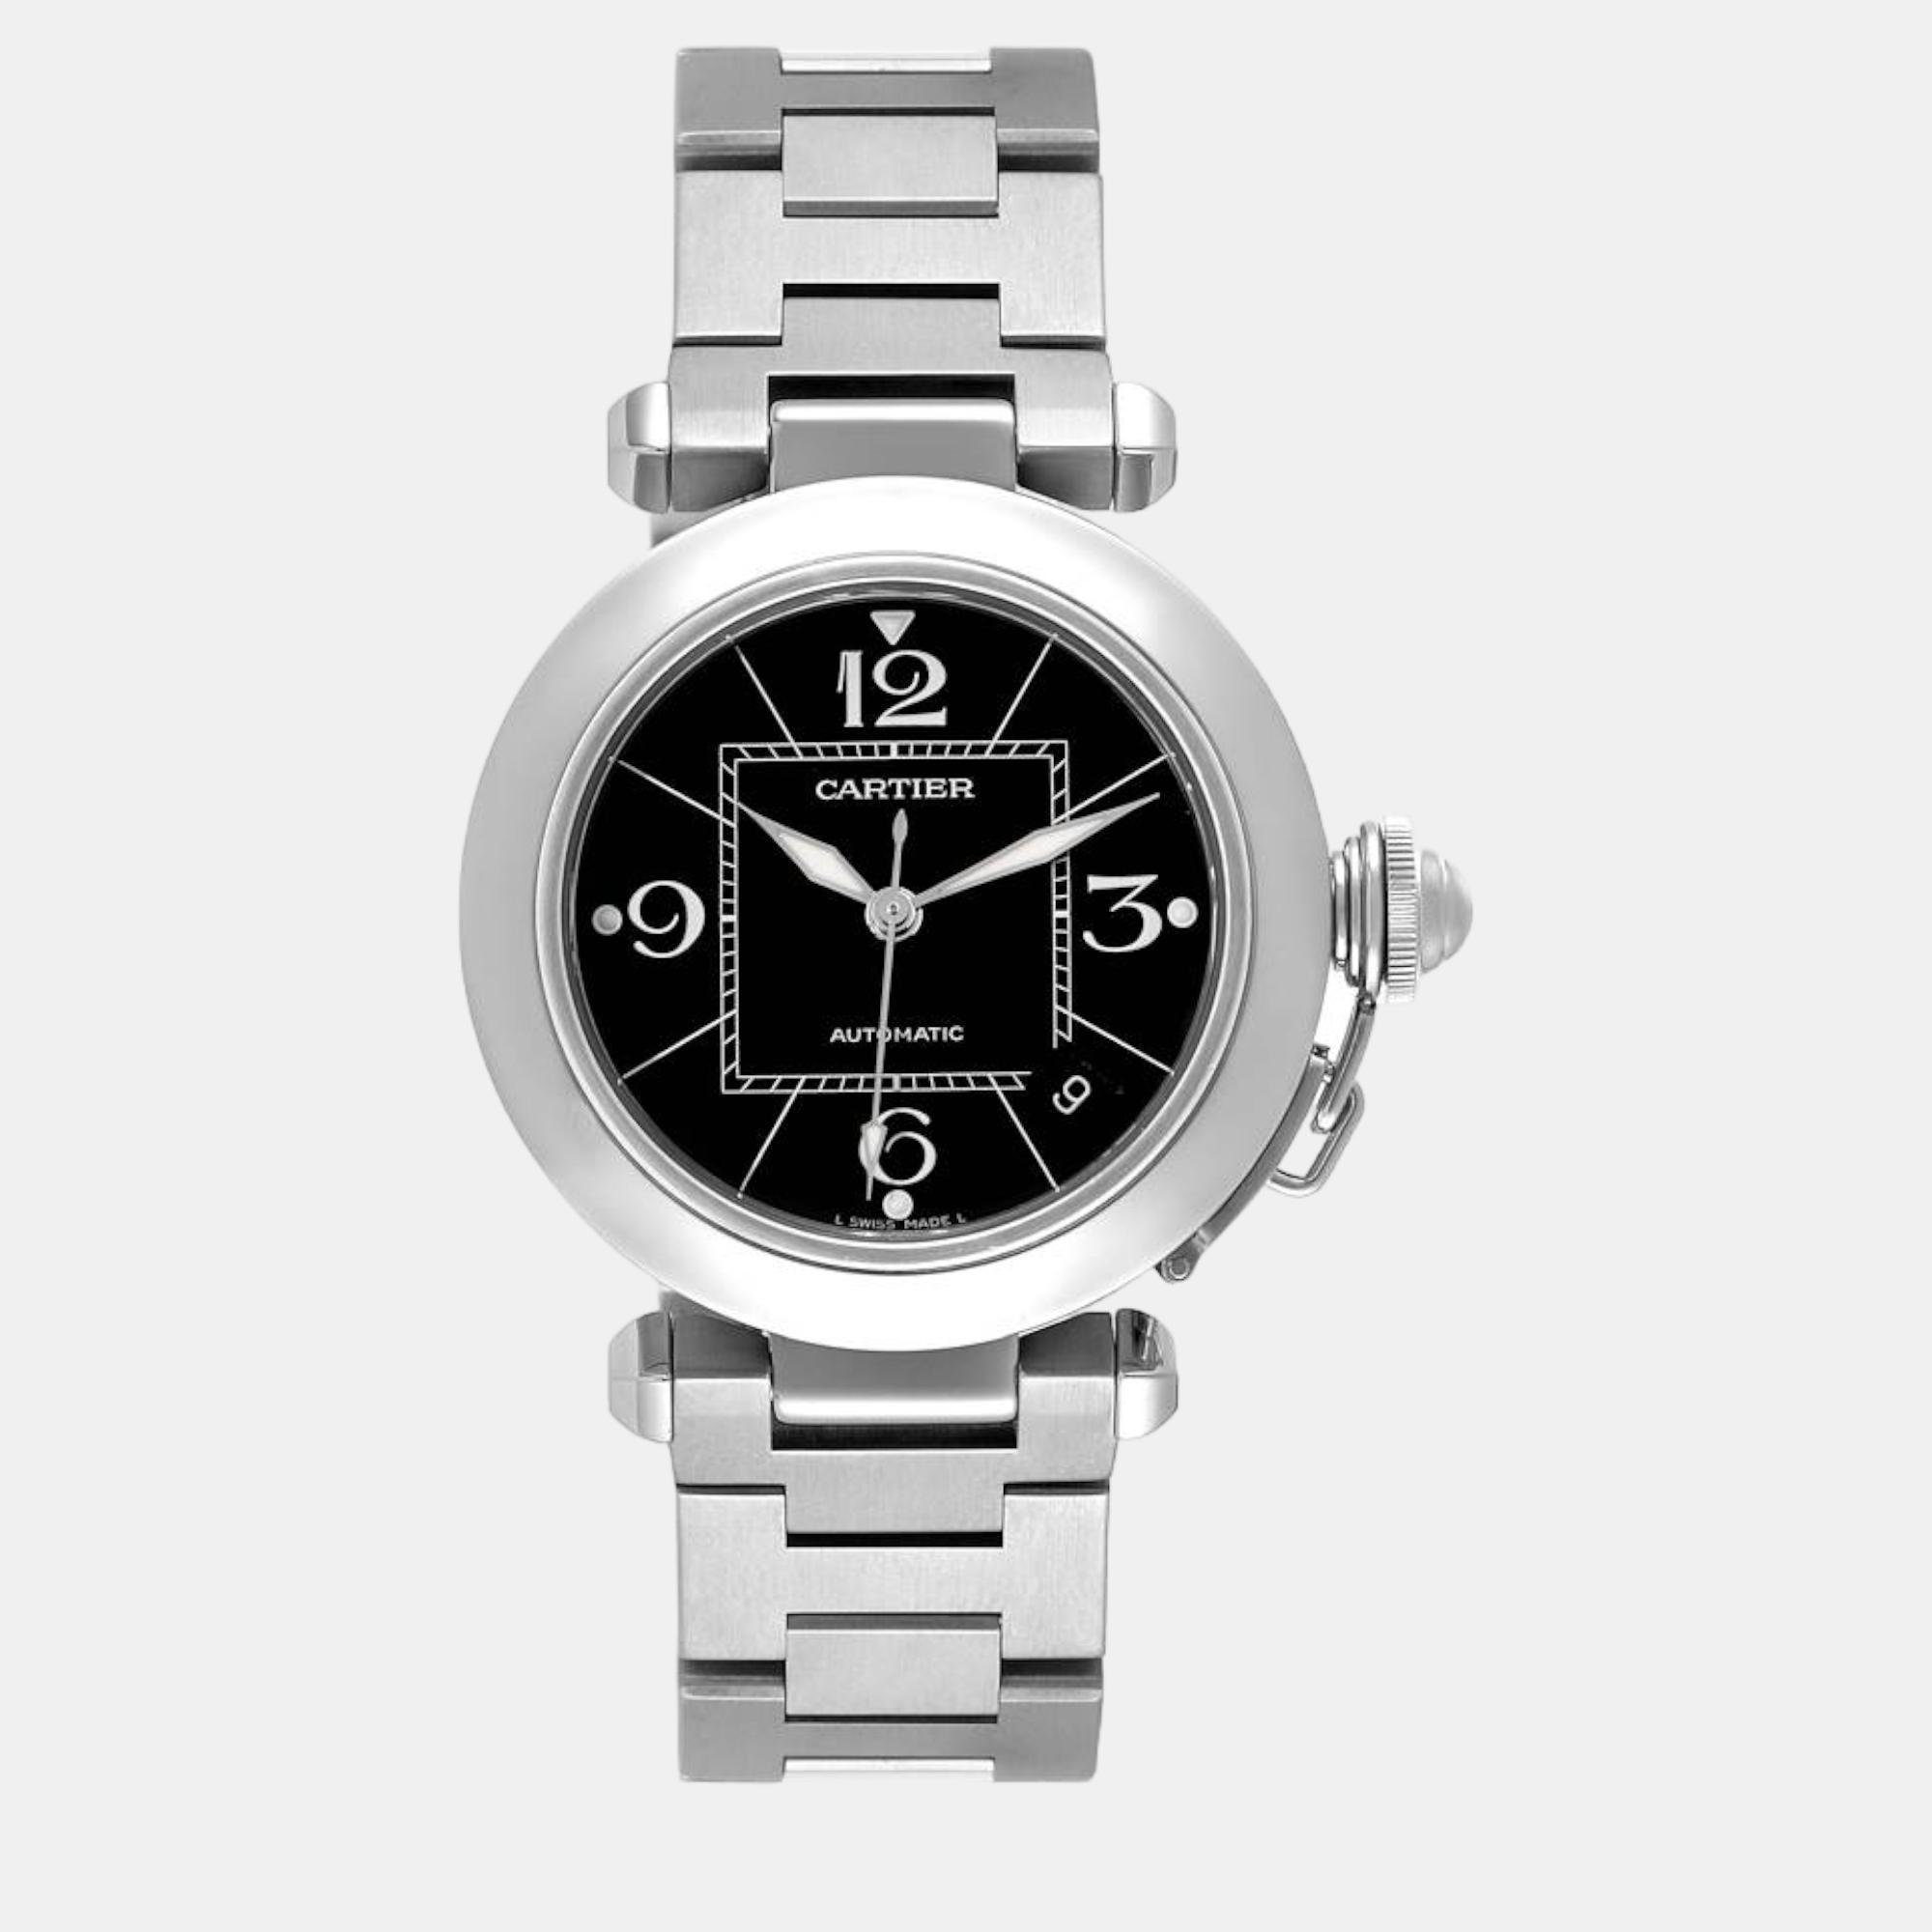 Cartier Pasha C Medium Black Dial Steel Ladies Watch W31076m7